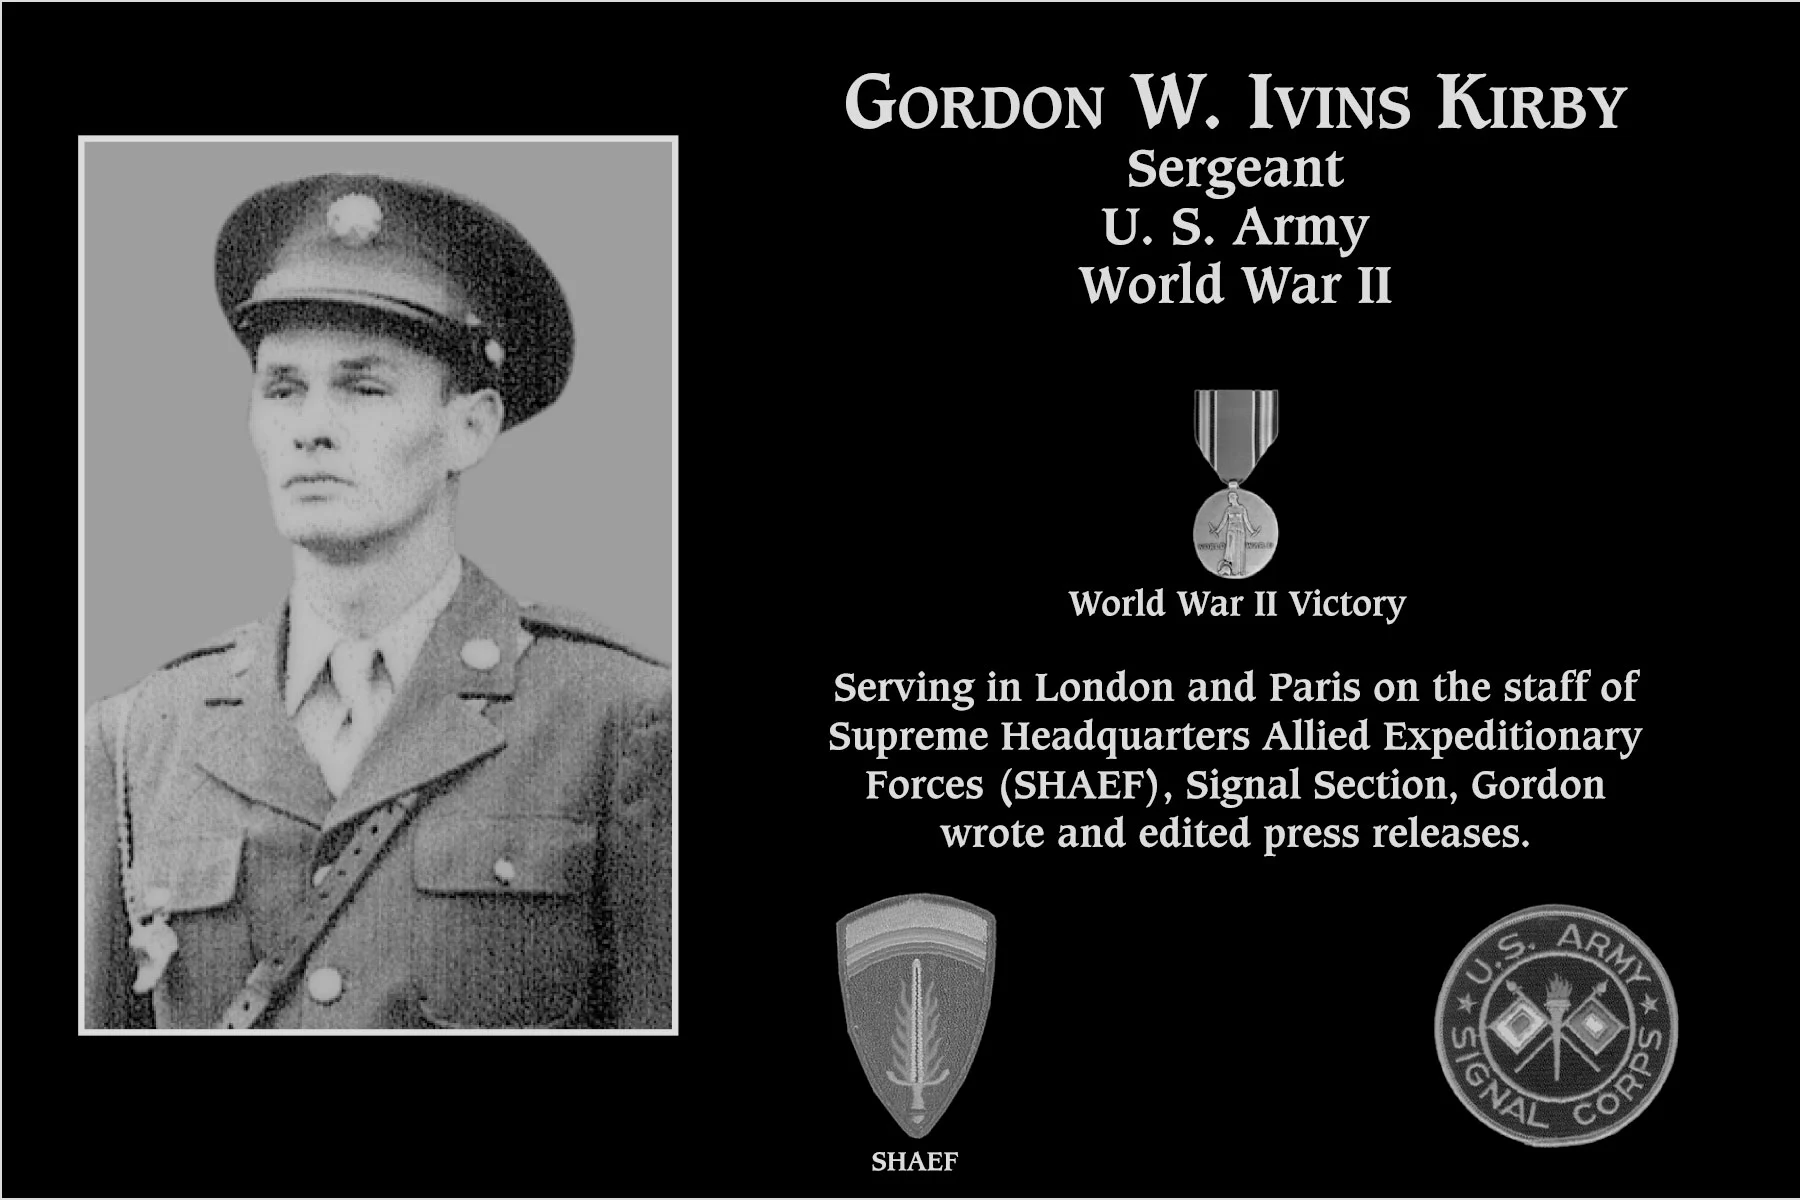 Gordon W. Ivins Kirby